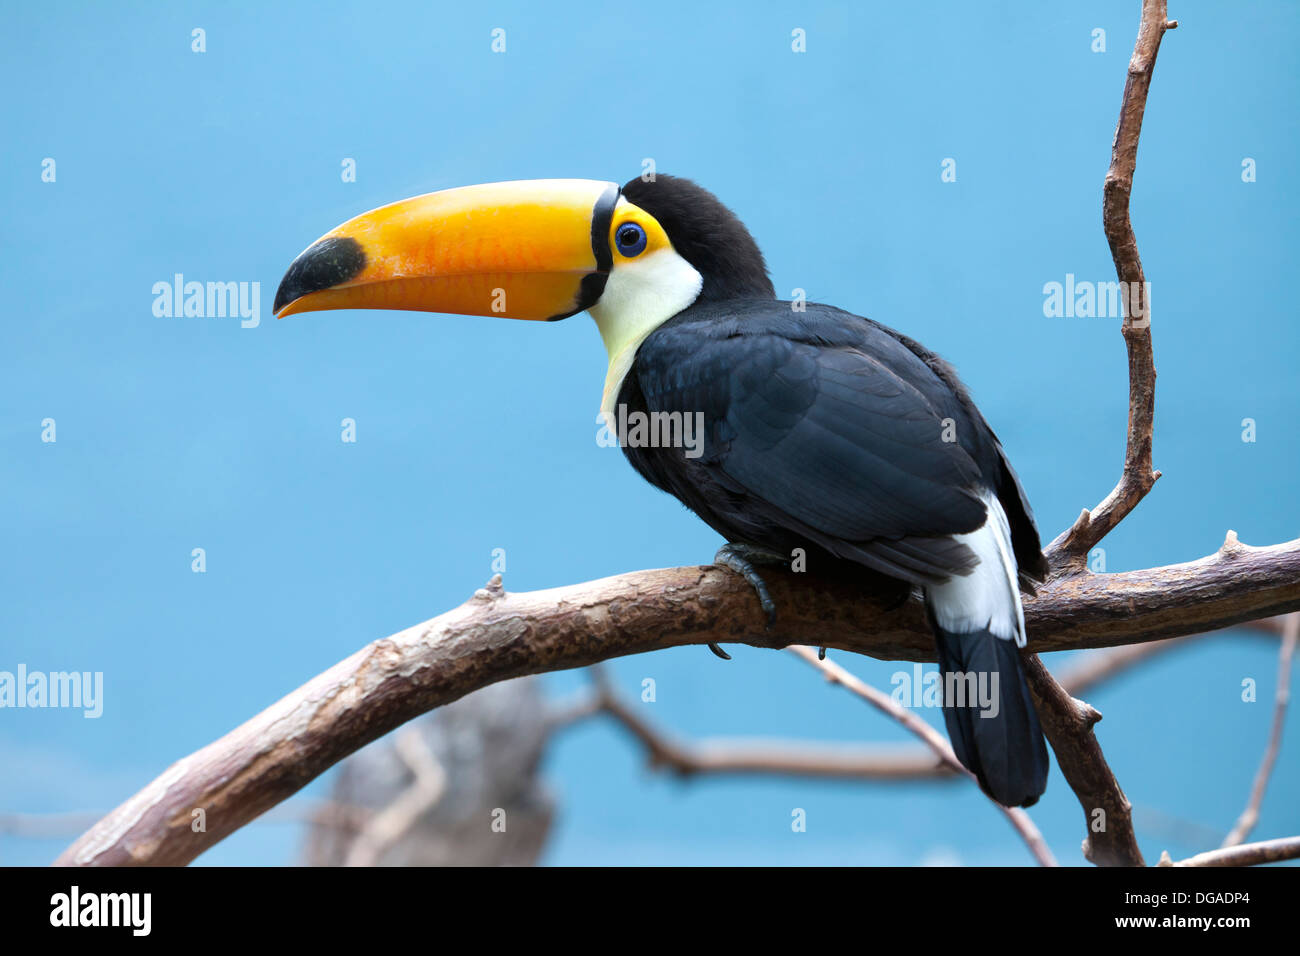 Toucan bird against blue sky Stock Photo